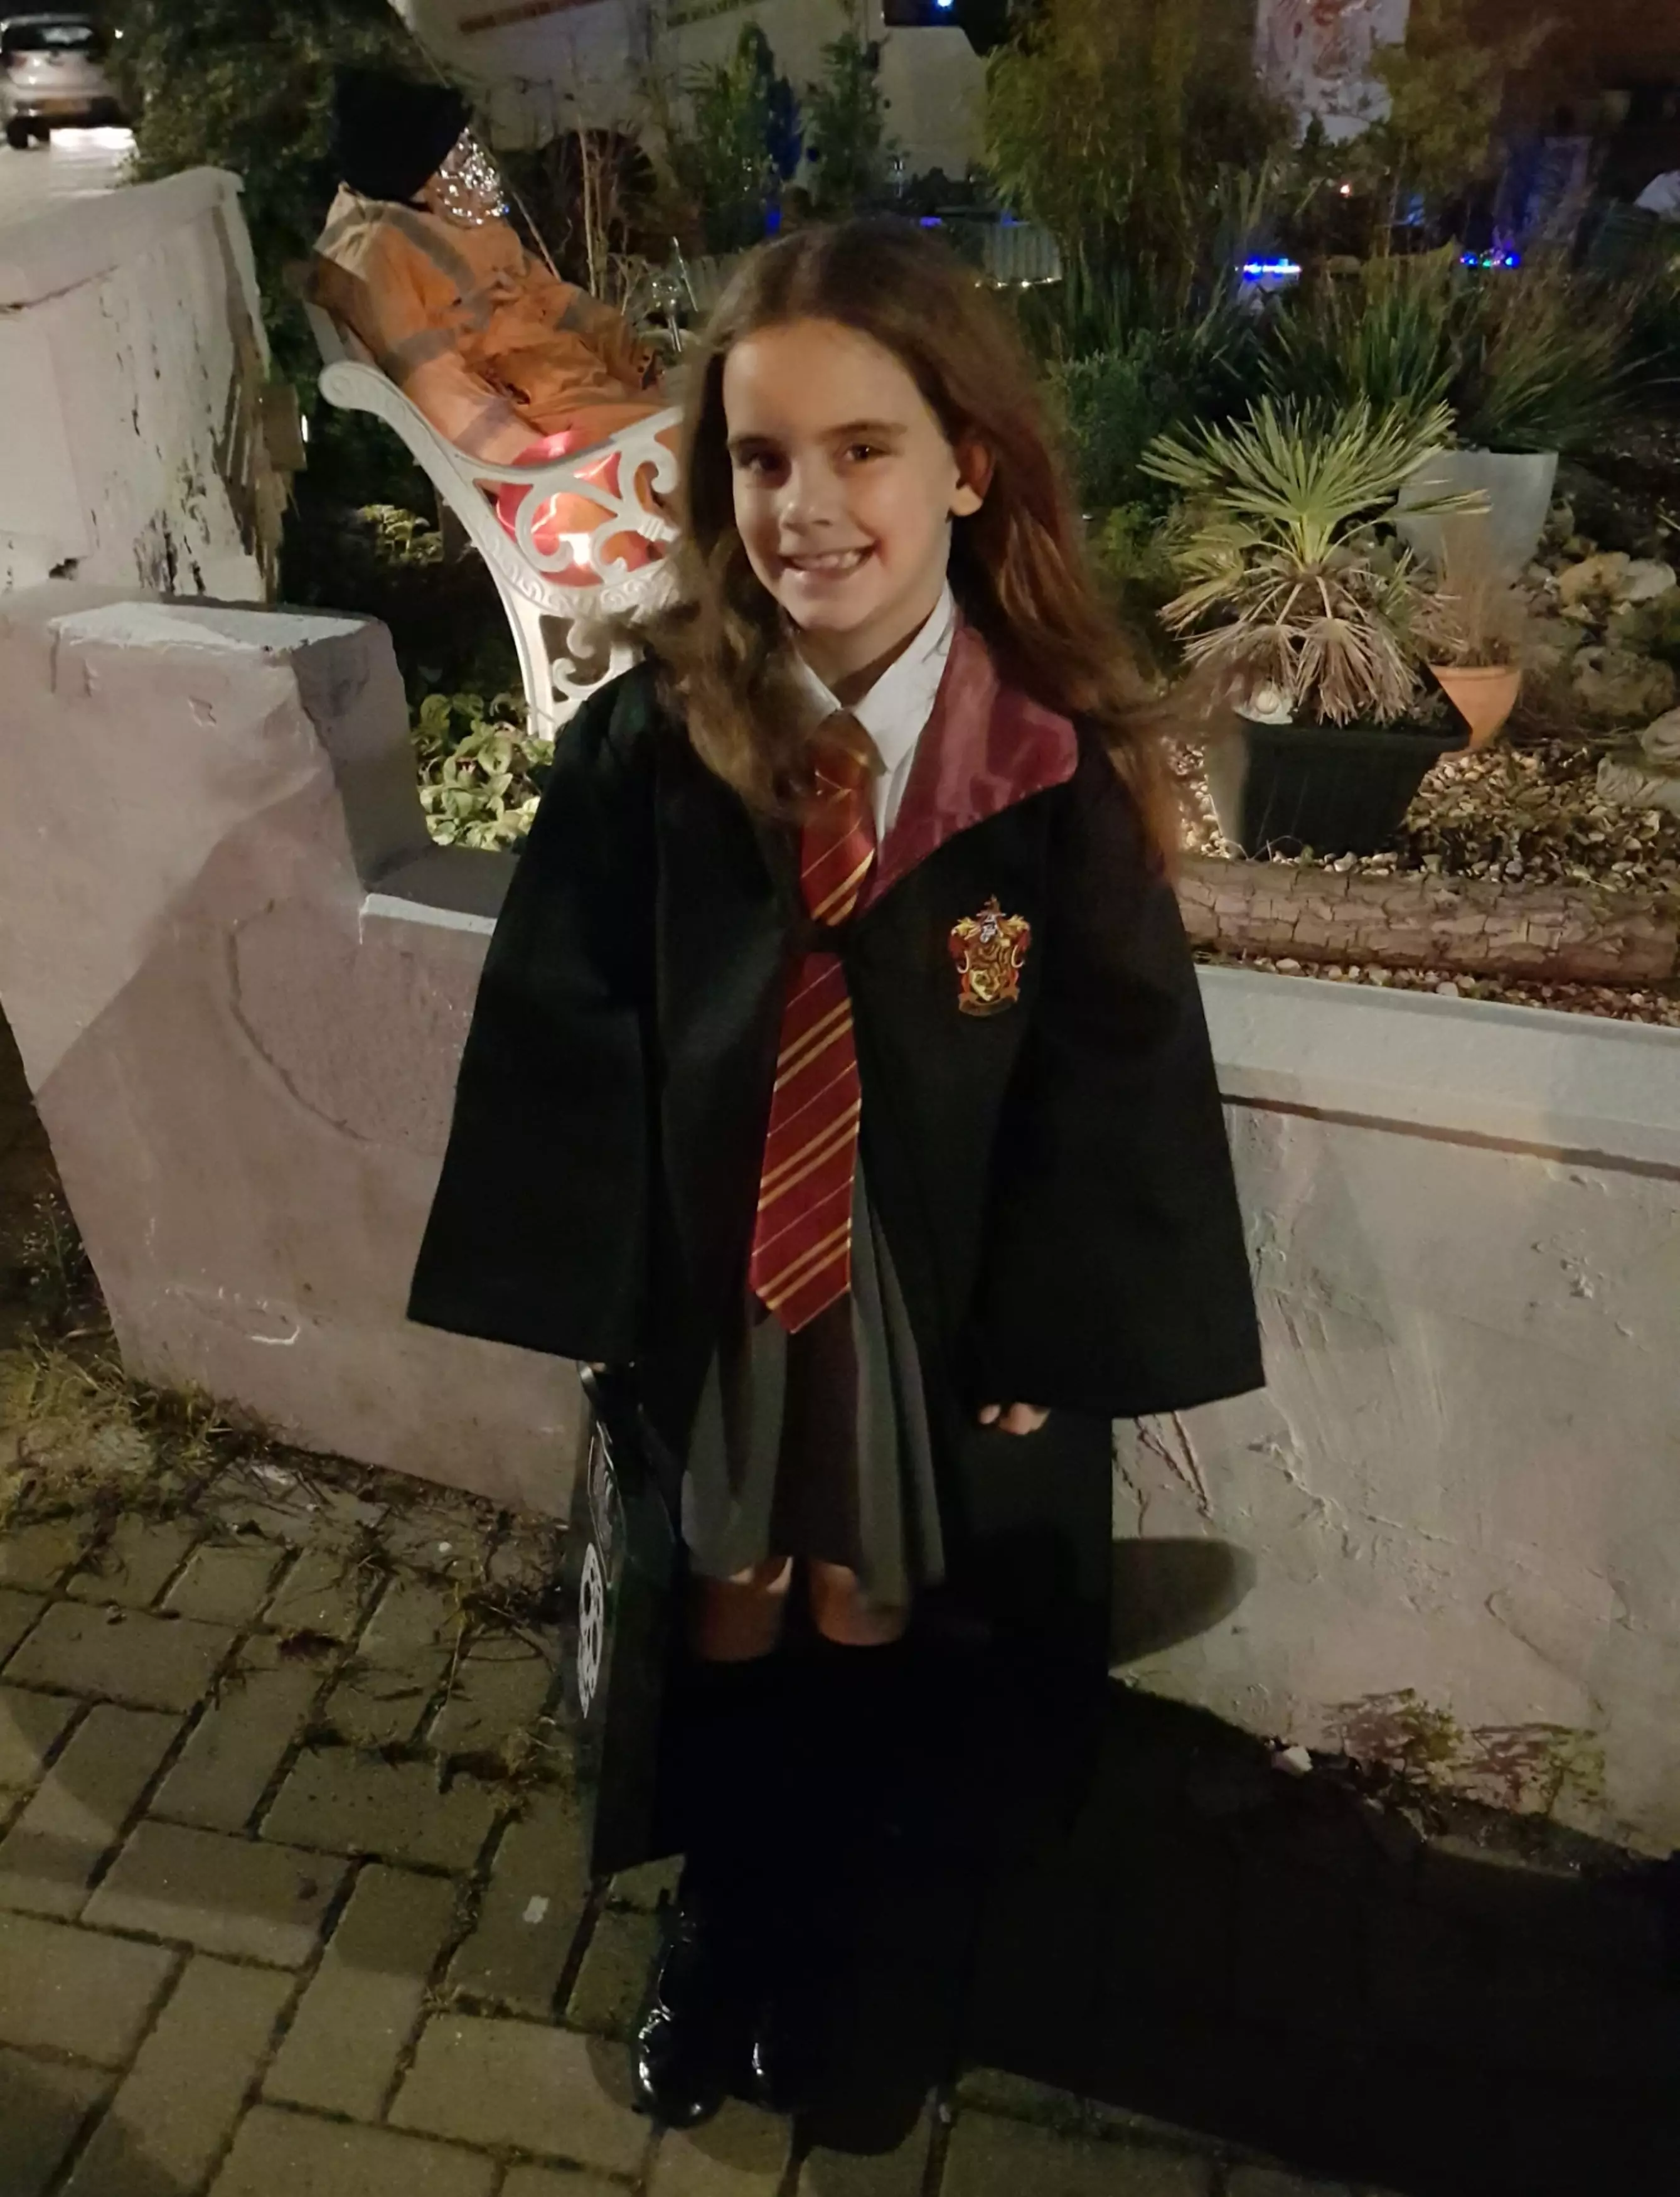 Emmie Allan, nine, looks so much like Harry Potter star Emma Watson strangers stop her on the street.